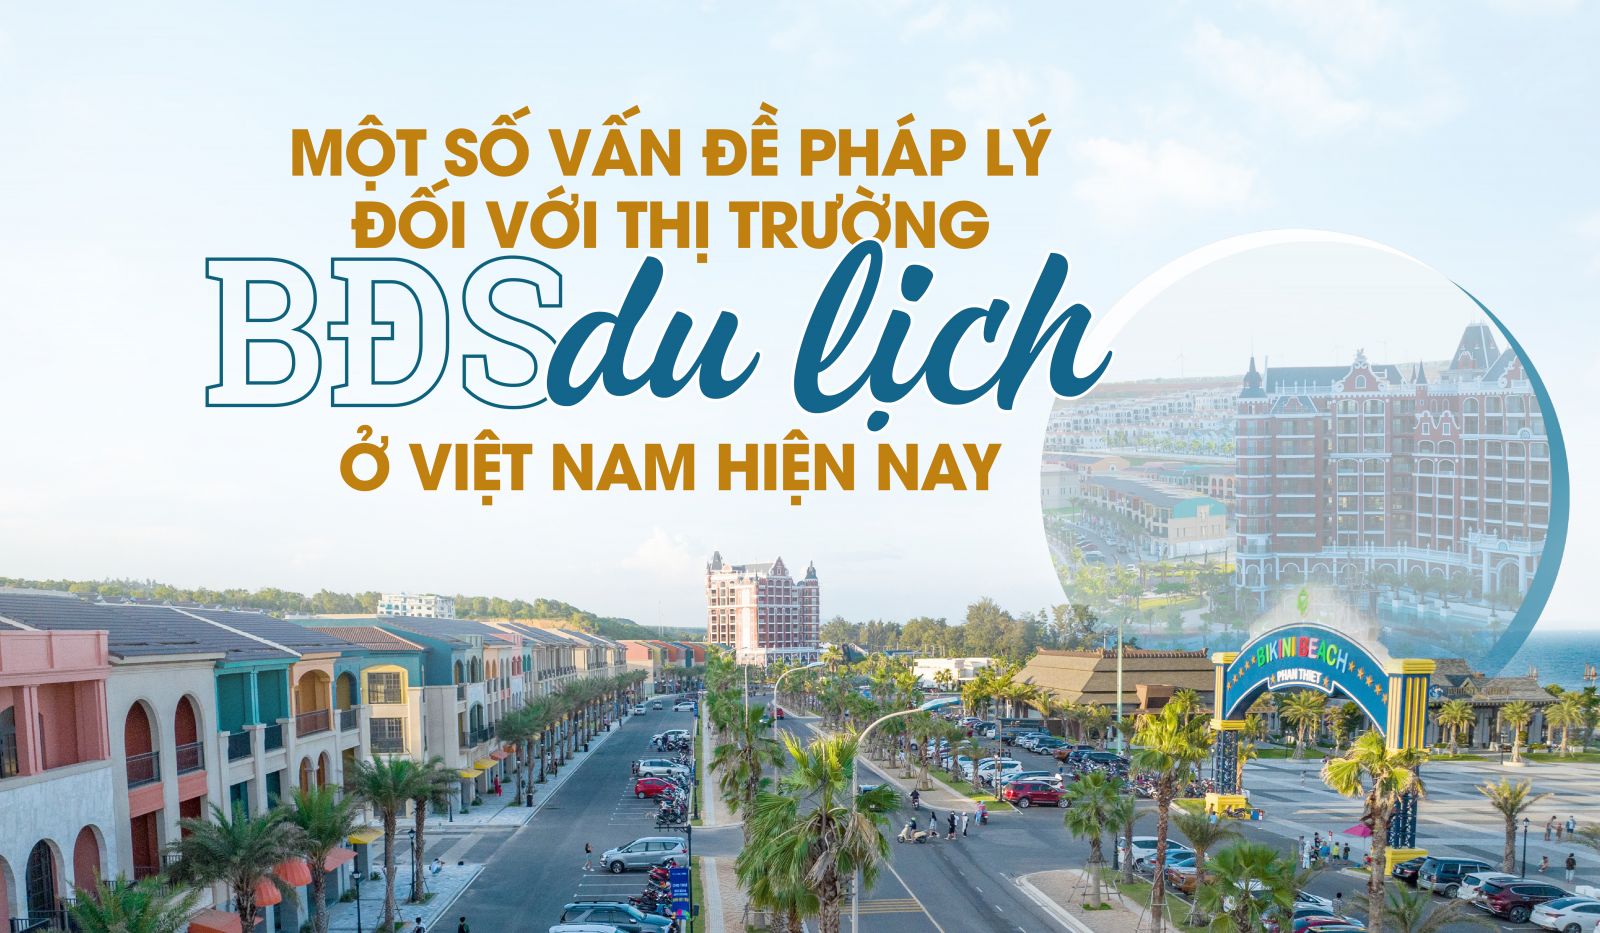 Một số vấn đề pháp lý đối với thị trường bất động sản du lịch ở Việt Nam hiện nay